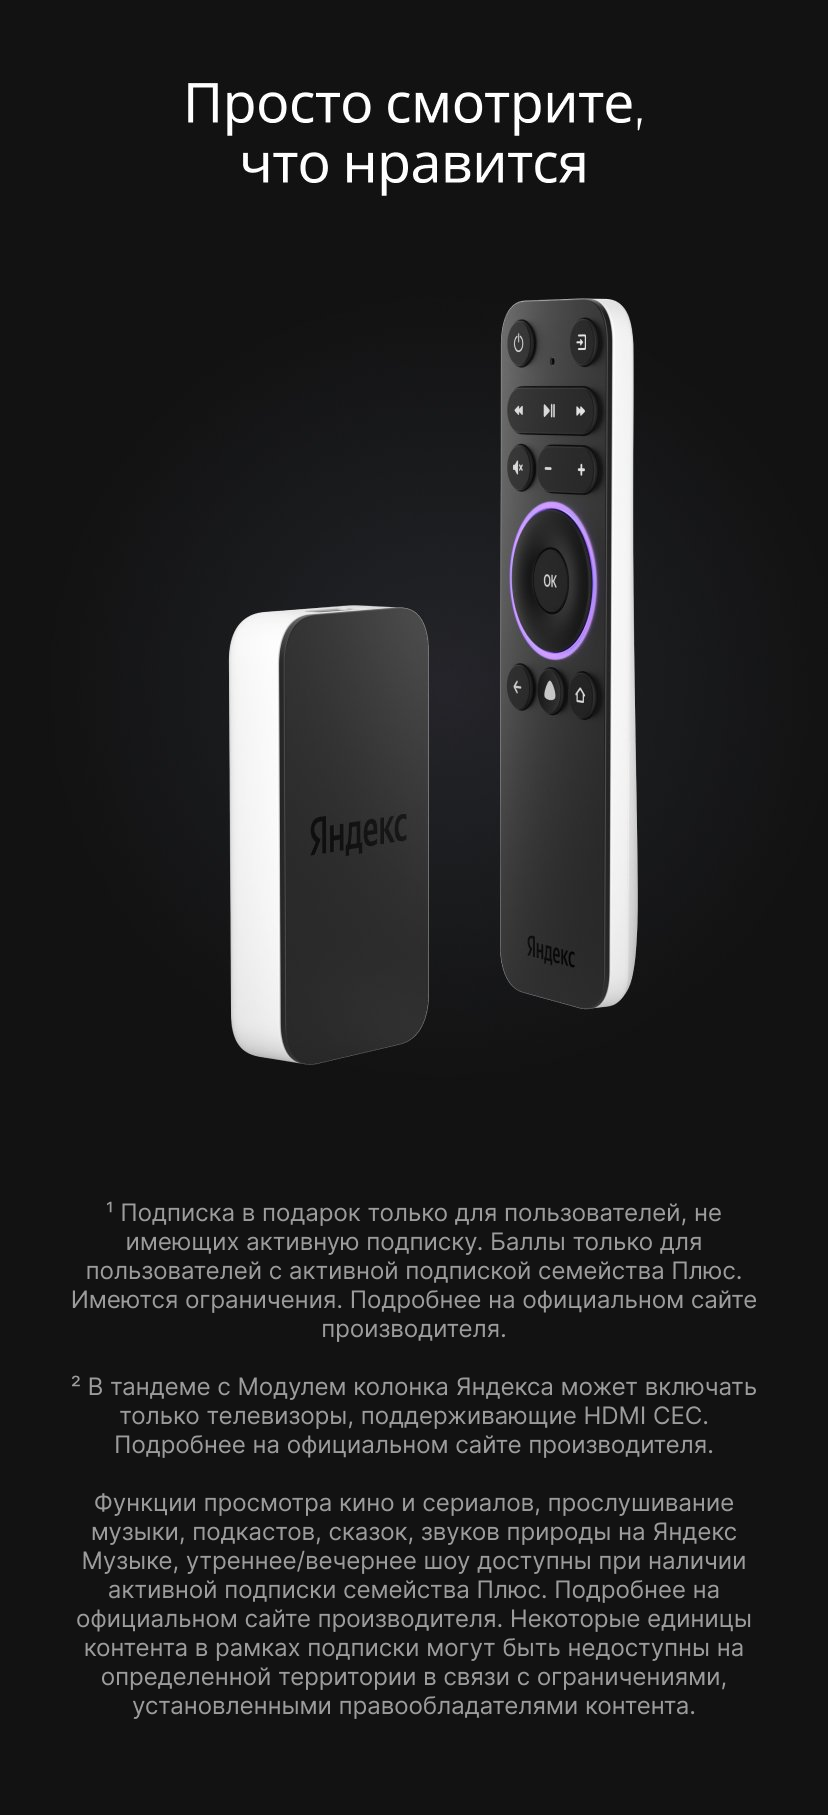 Яндекс Smart-TV с Алисой [YNDX-00251] купить Красноярск